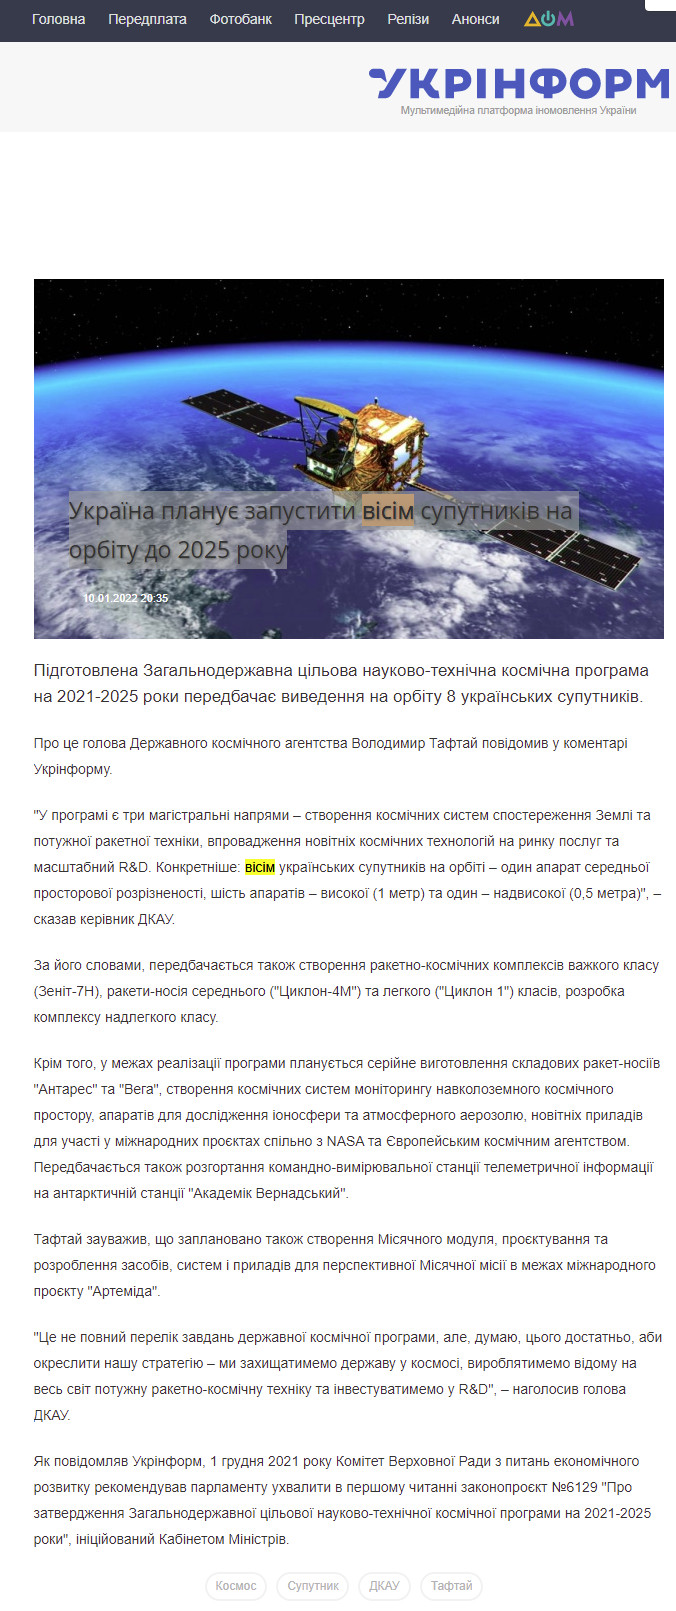 https://www.ukrinform.ua/rubric-technology/3382786-ukraina-planue-zapustiti-visim-suputnikiv-na-orbitu-do-2025-roku.html